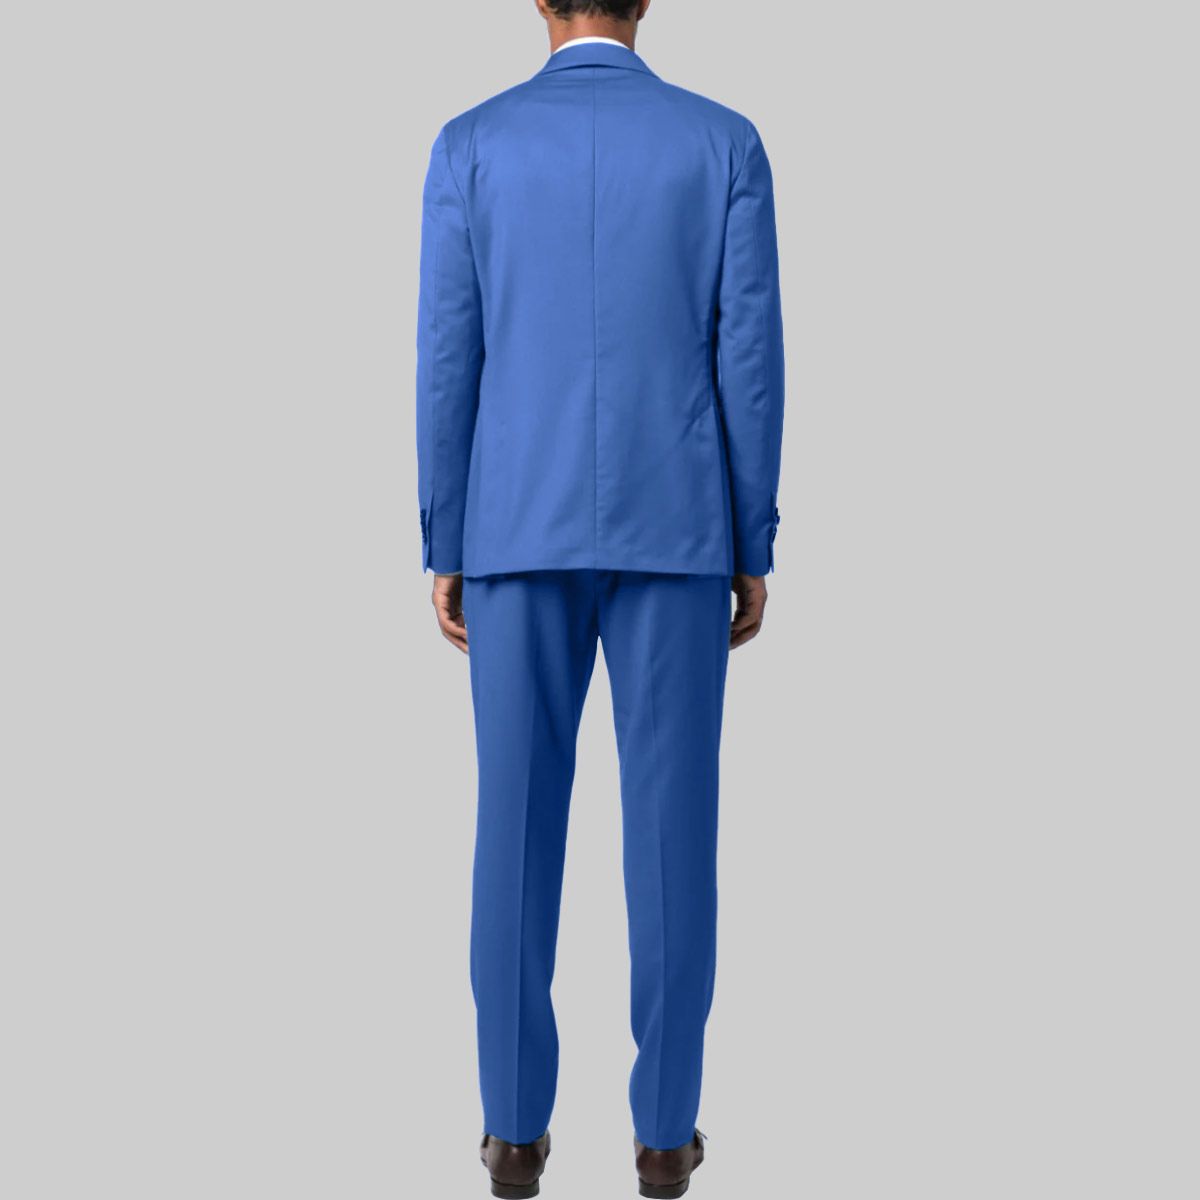 Two Piece Suit Blue